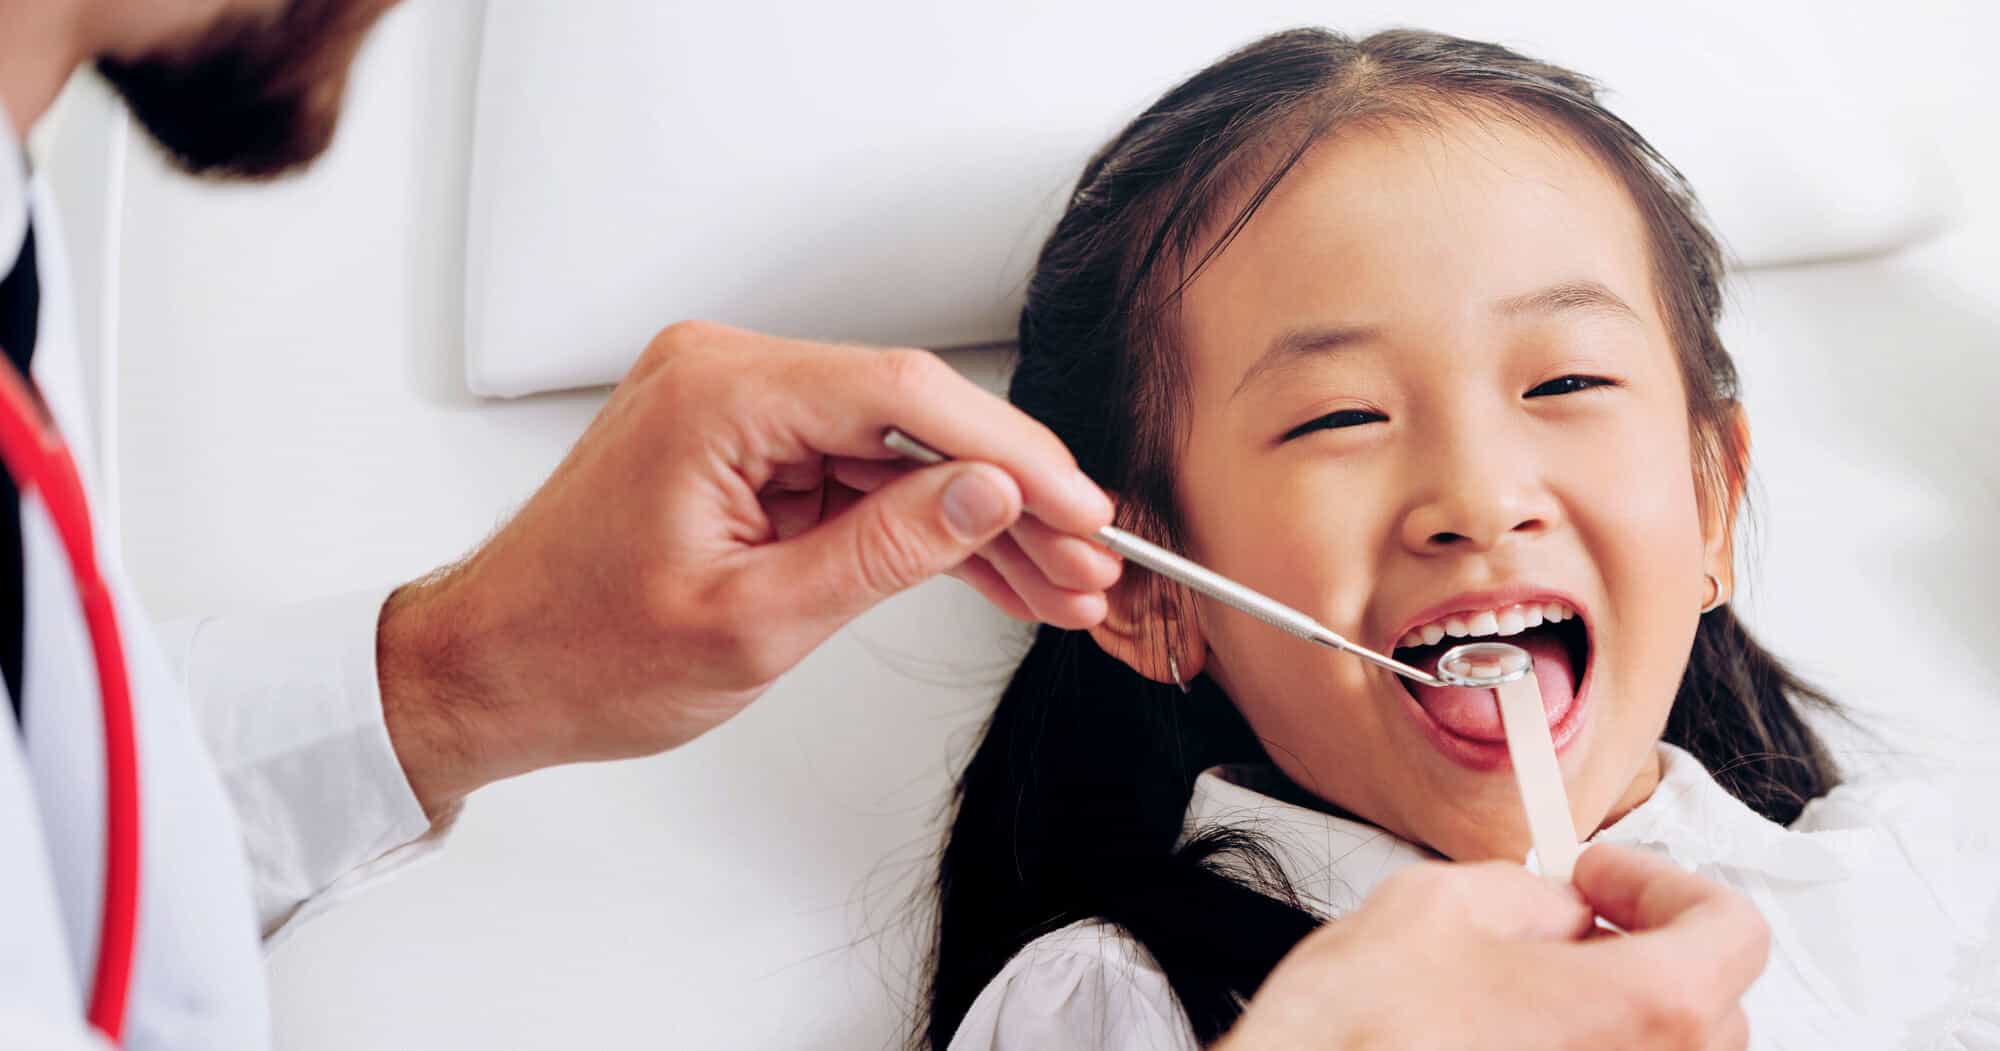 Children’s oral health